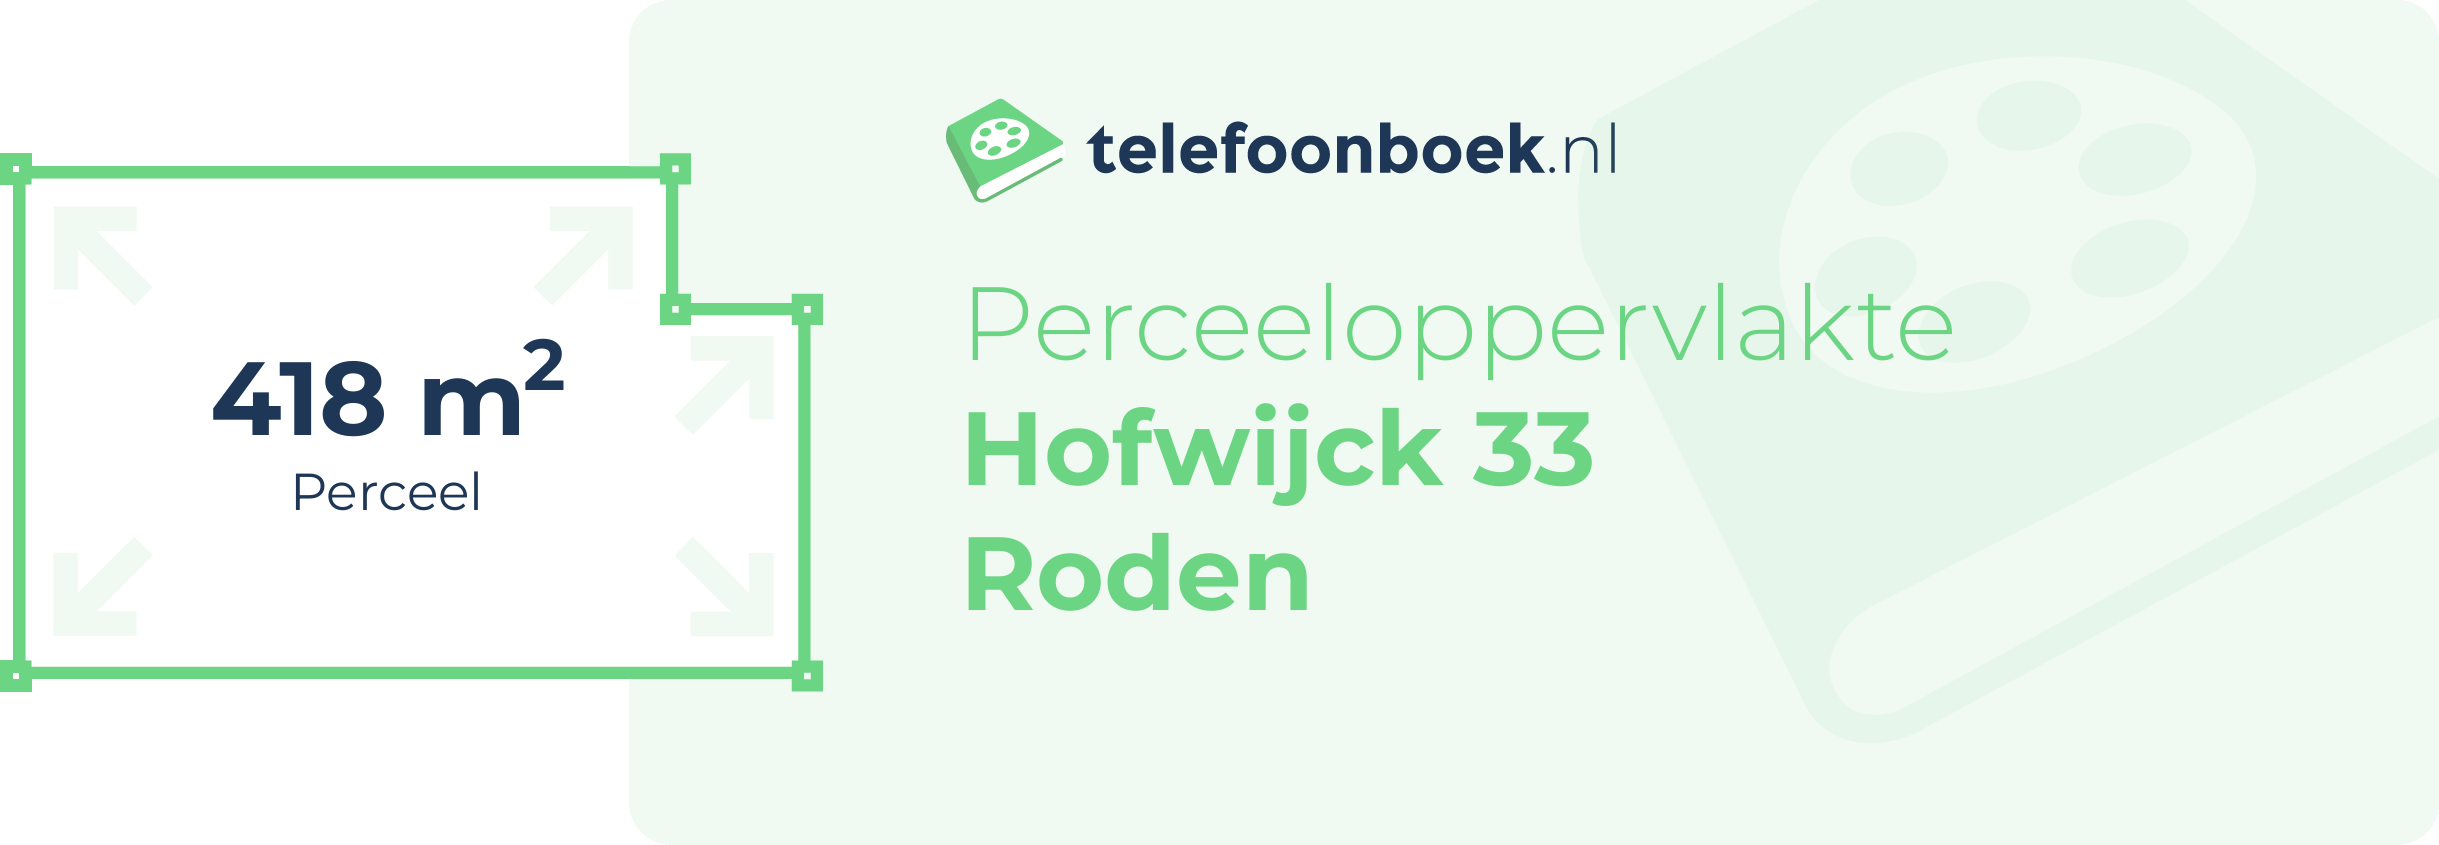 Perceeloppervlakte Hofwijck 33 Roden